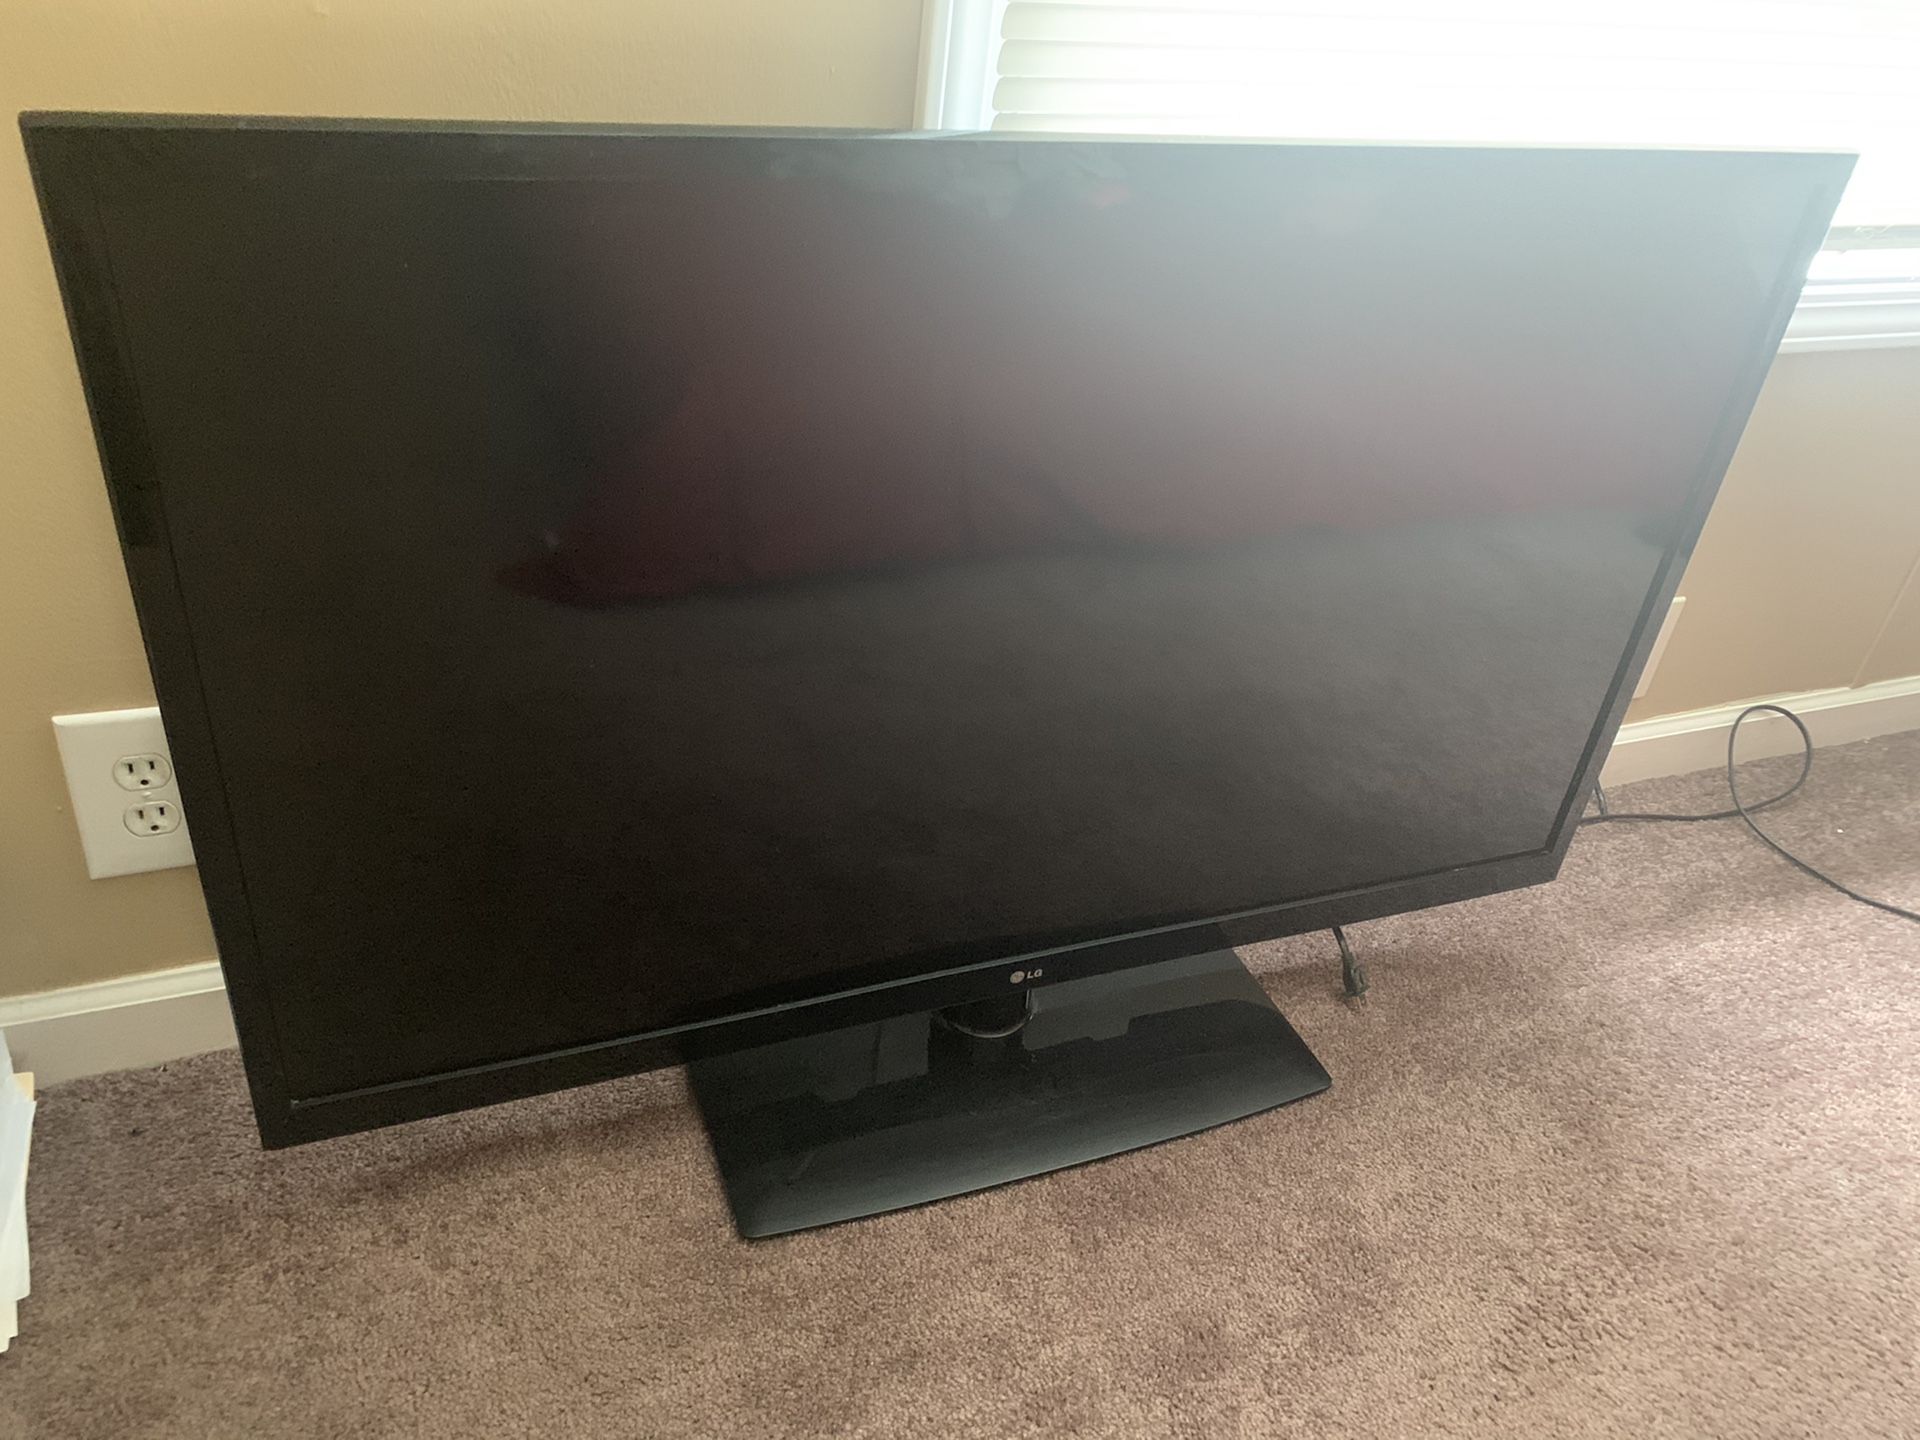 LG Plasma 47”inch TV